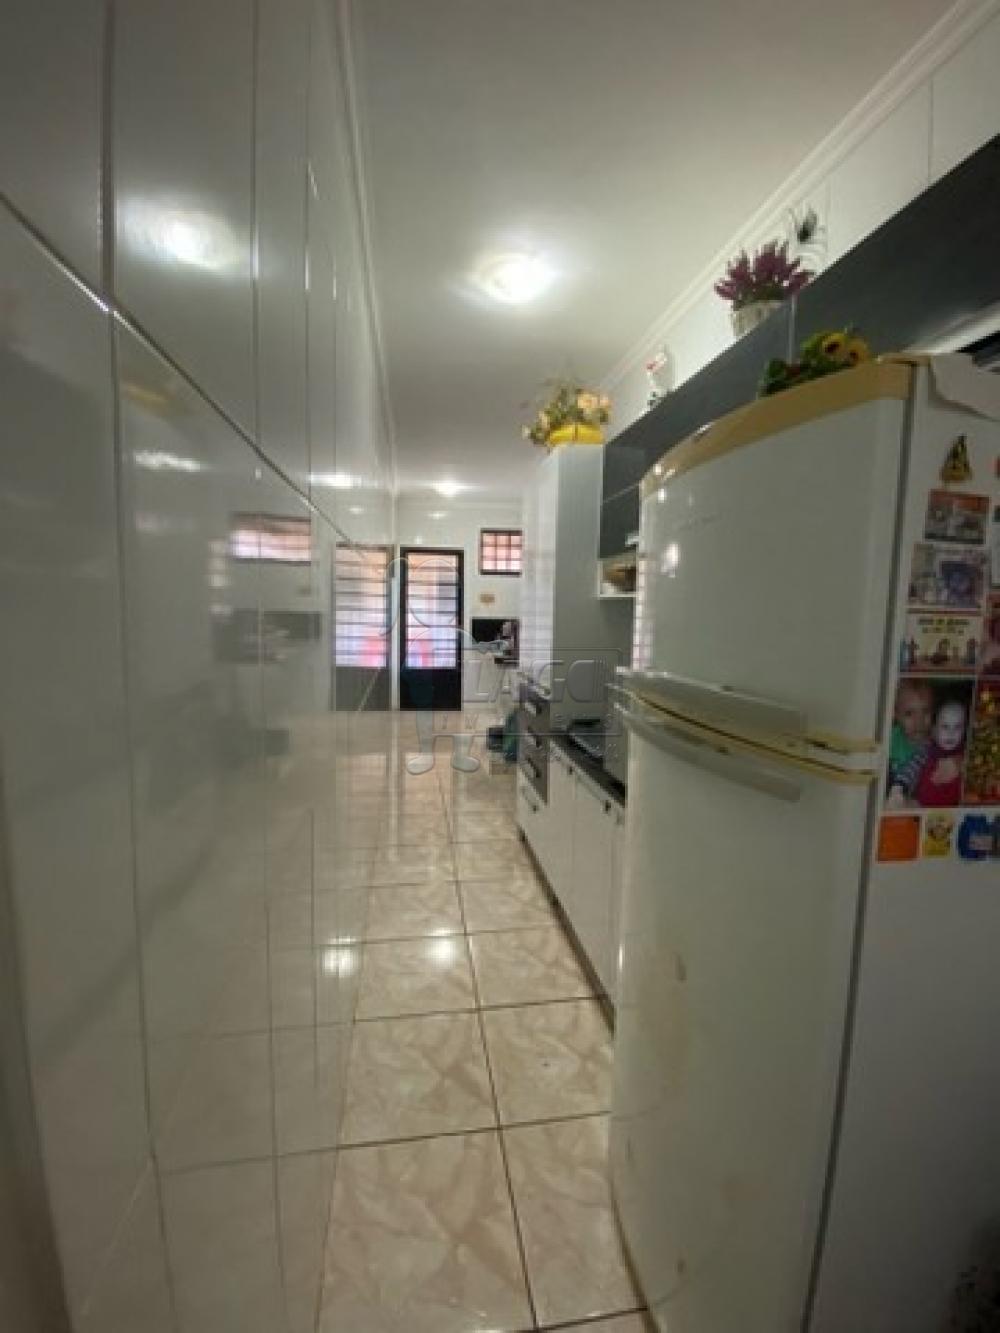 Comprar Casas / Padrão em Ribeirão Preto R$ 290.000,00 - Foto 6